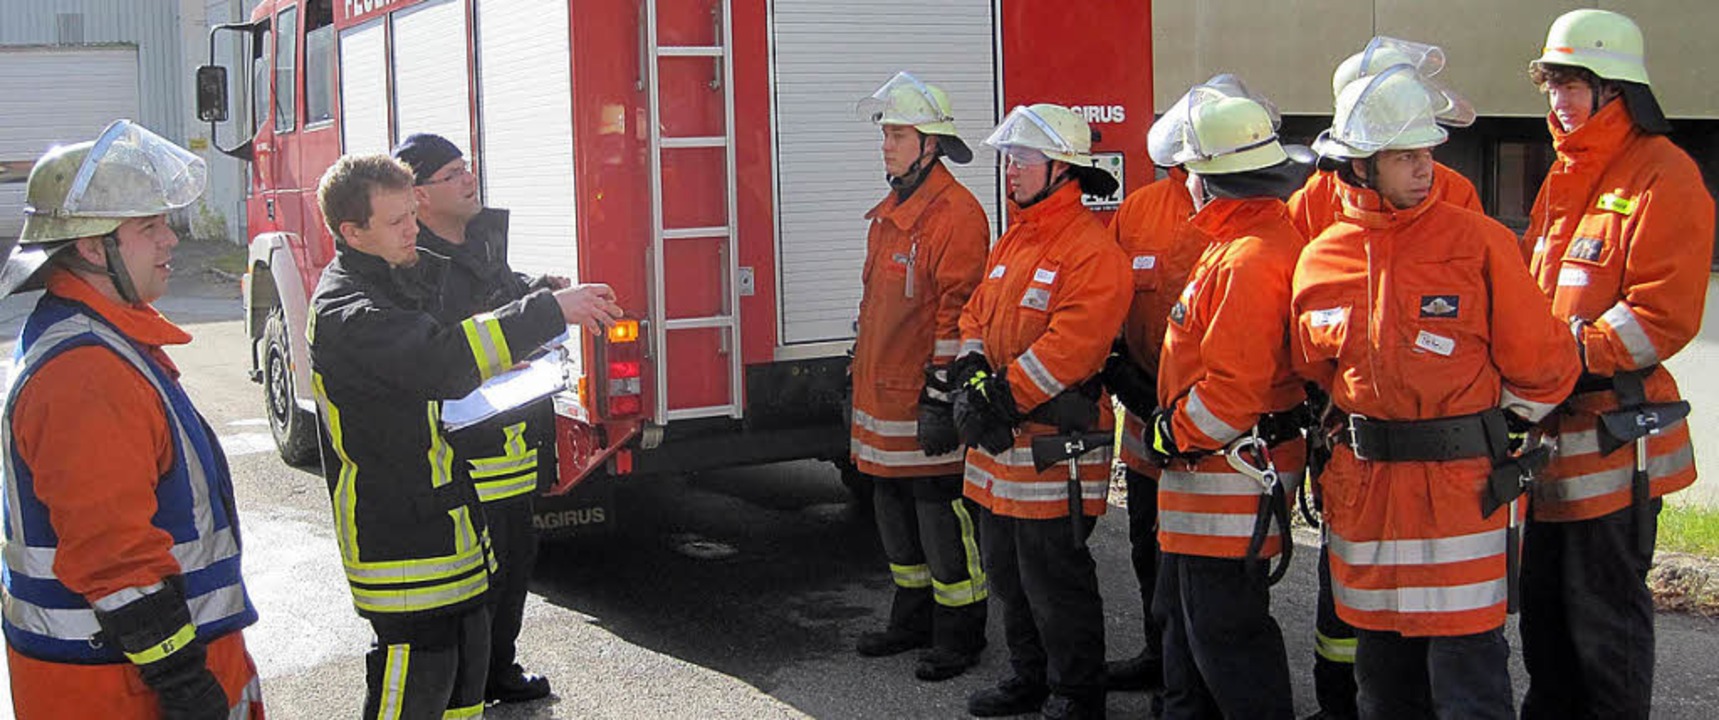 Die strengen Prüfer und die Feuerwehr-Azubis: Aufgabenverteilung am Prüfungstag   | Foto: Feuerwehr St. Blasien